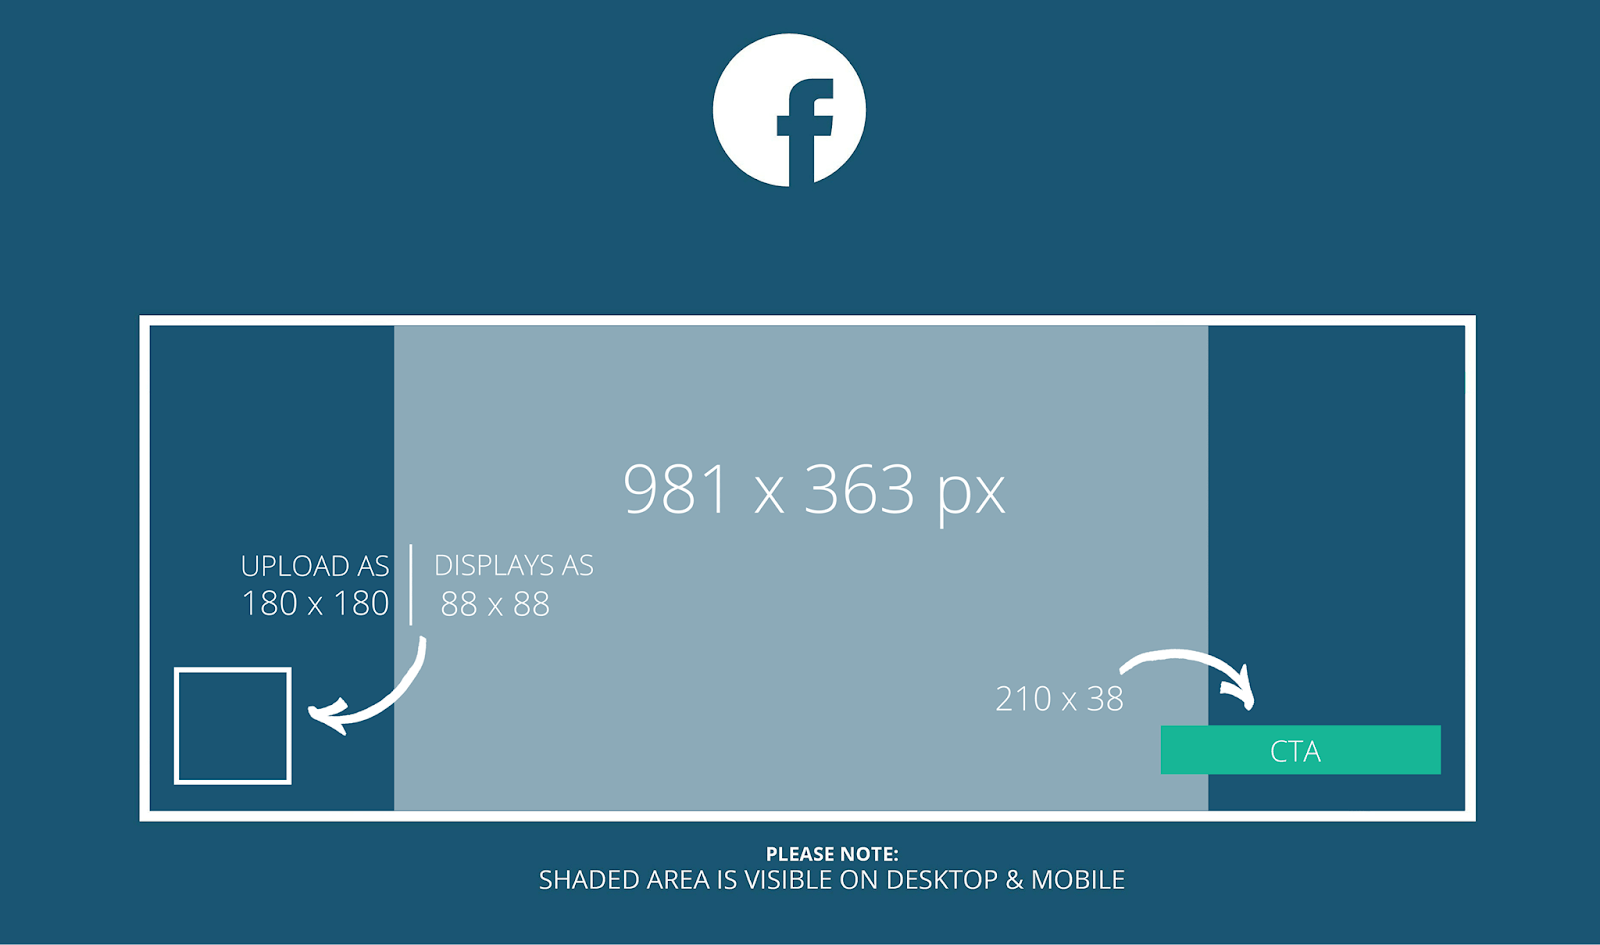 Mới nhất Kích thước hình ảnh đăng Facebook chuẩn nhất năm 2022